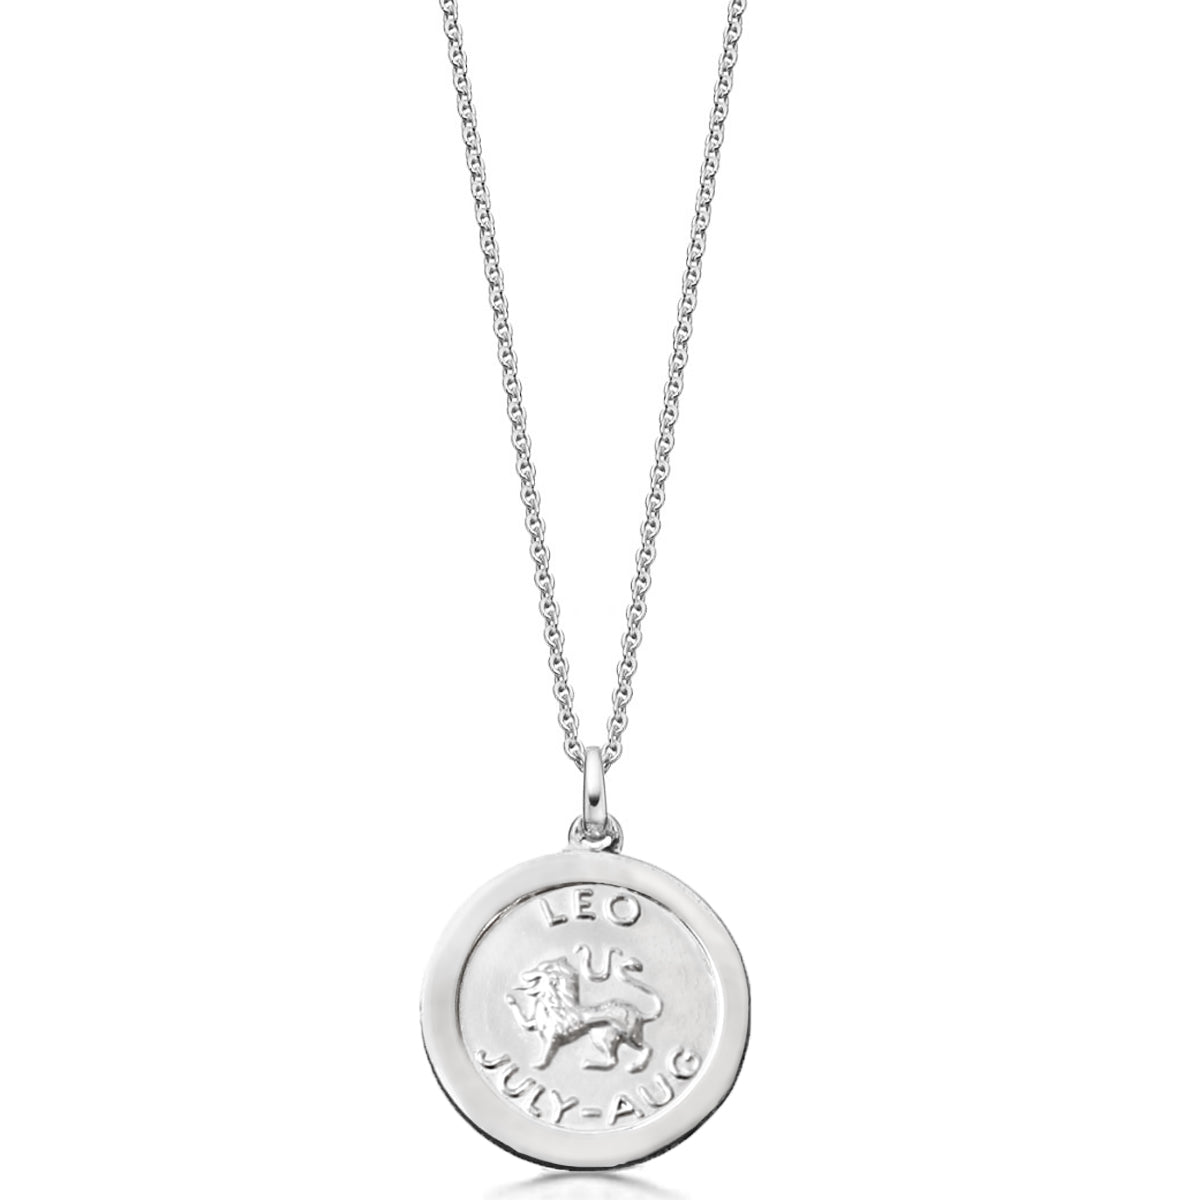 Silver Leo Zodiac pendant